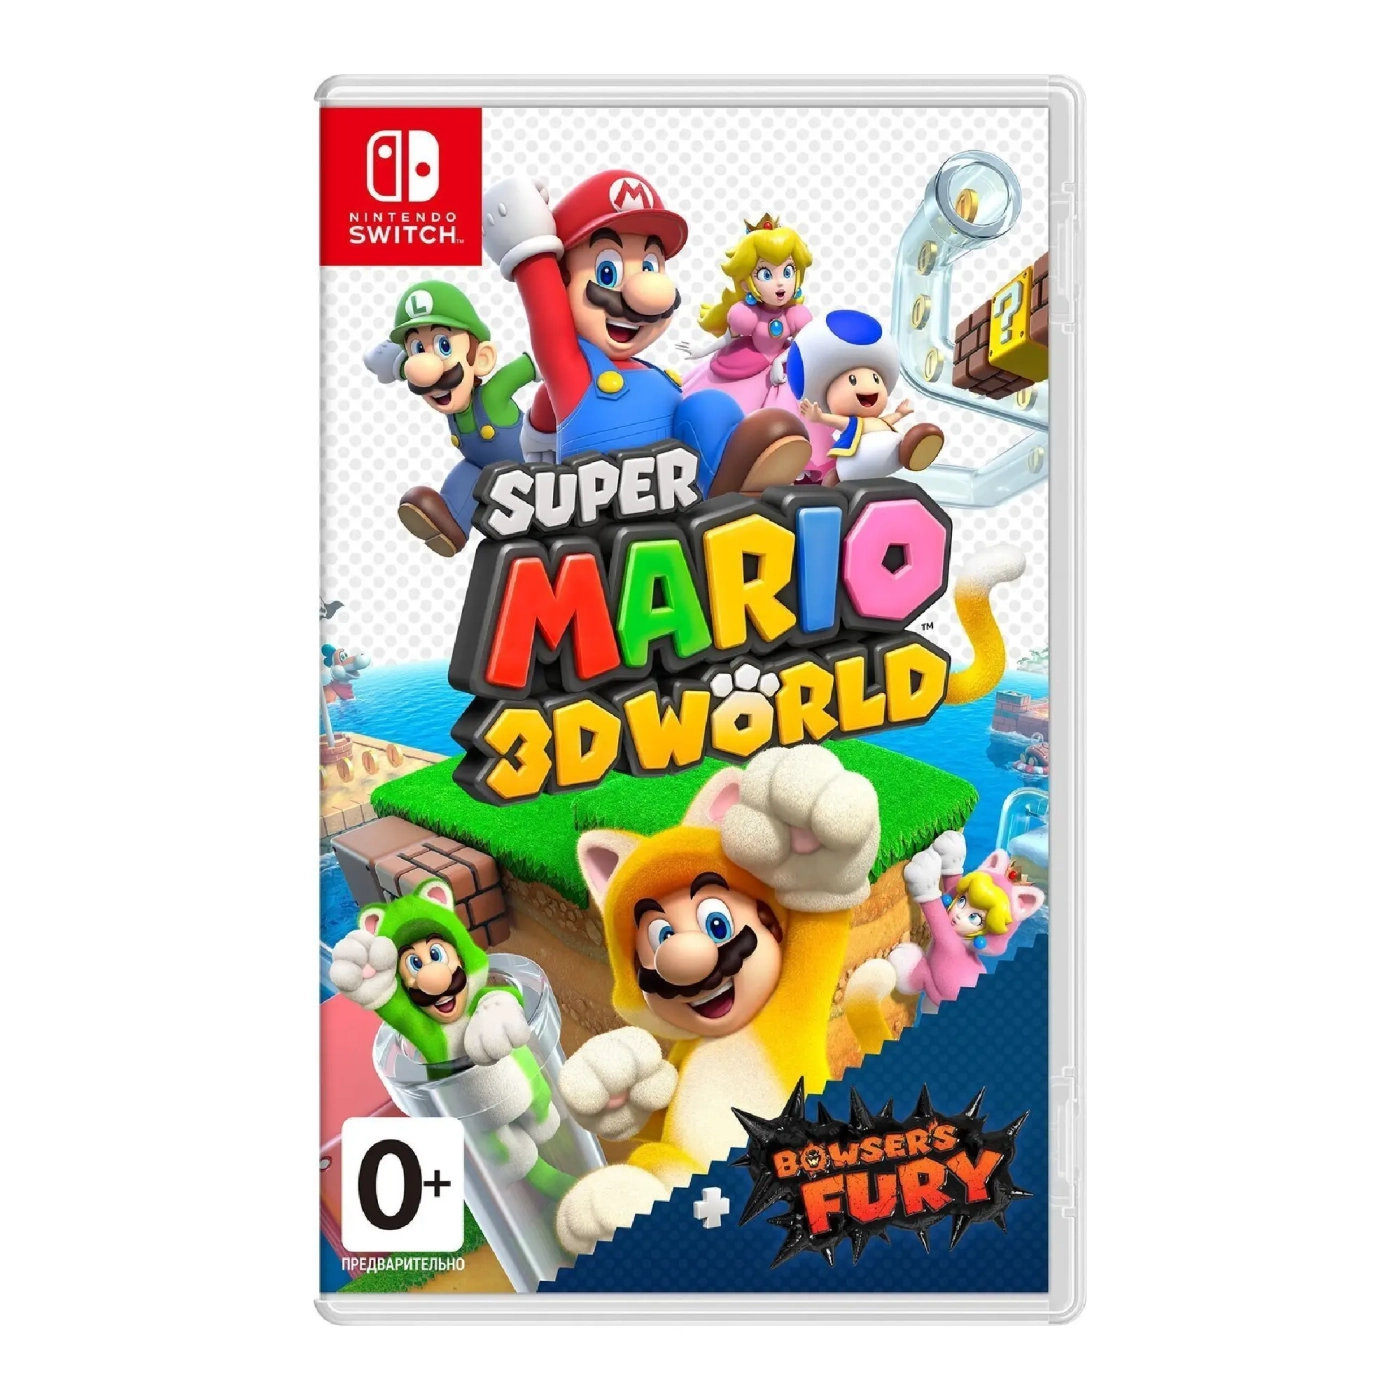 Купить Игра Nintendo Super Mario 3D World + Bowser's Fury, картридж (045496426972) - фото 1